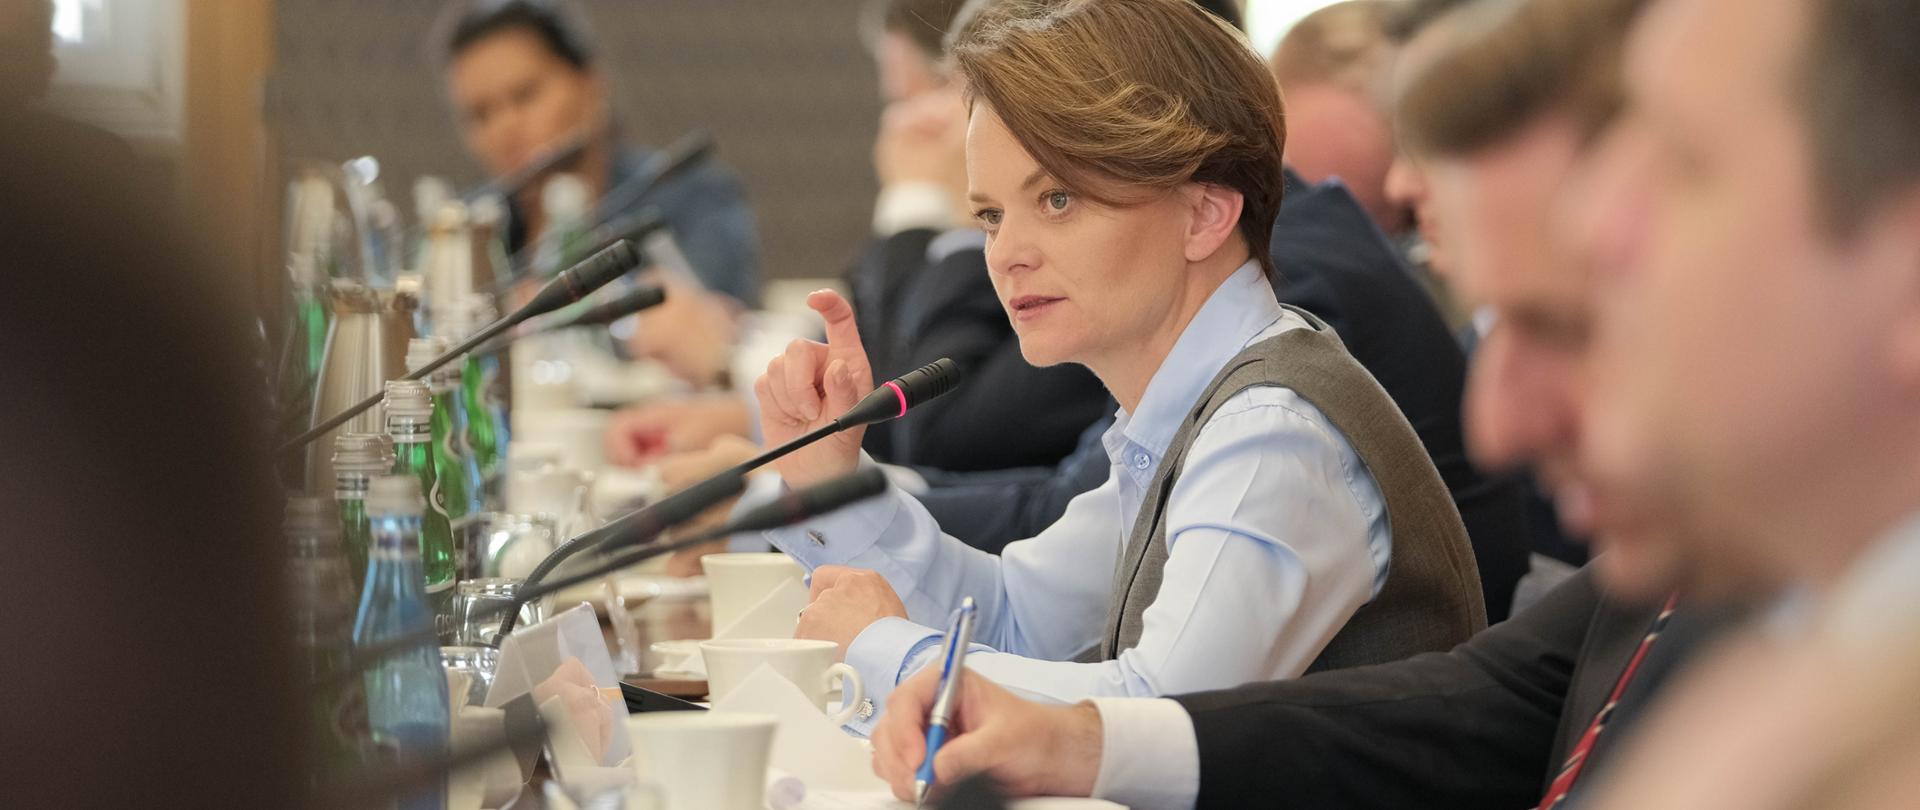 Wiceminister Jadwiga Emilewicz siedzi przy stole i mówi do mikrofonu.